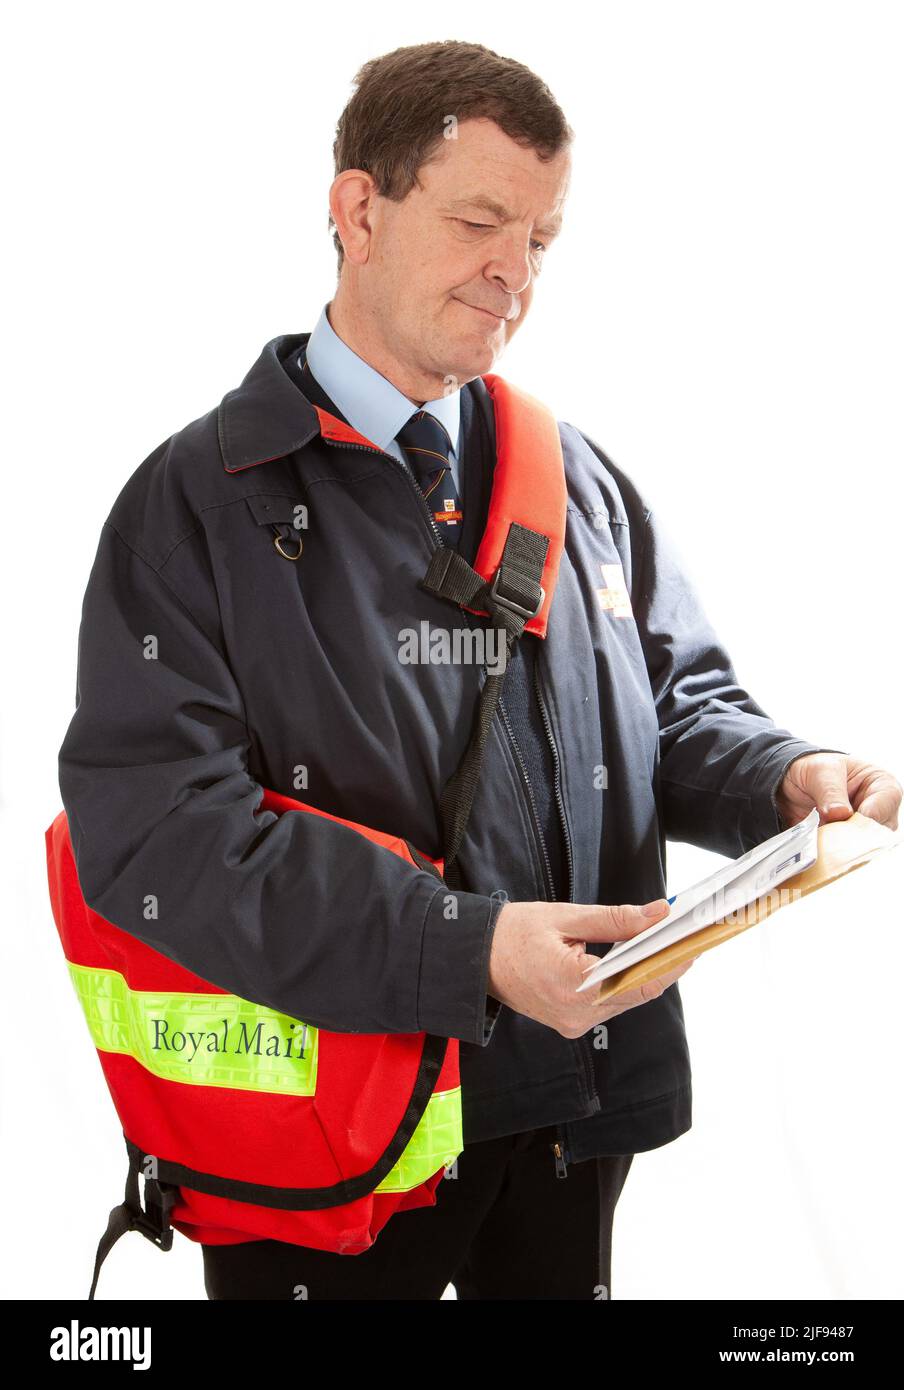 Un travailleur postal britannique en uniforme triant son courrier sur son tour. Partie d'une série d'images avec le même modèle de caractère. Banque D'Images